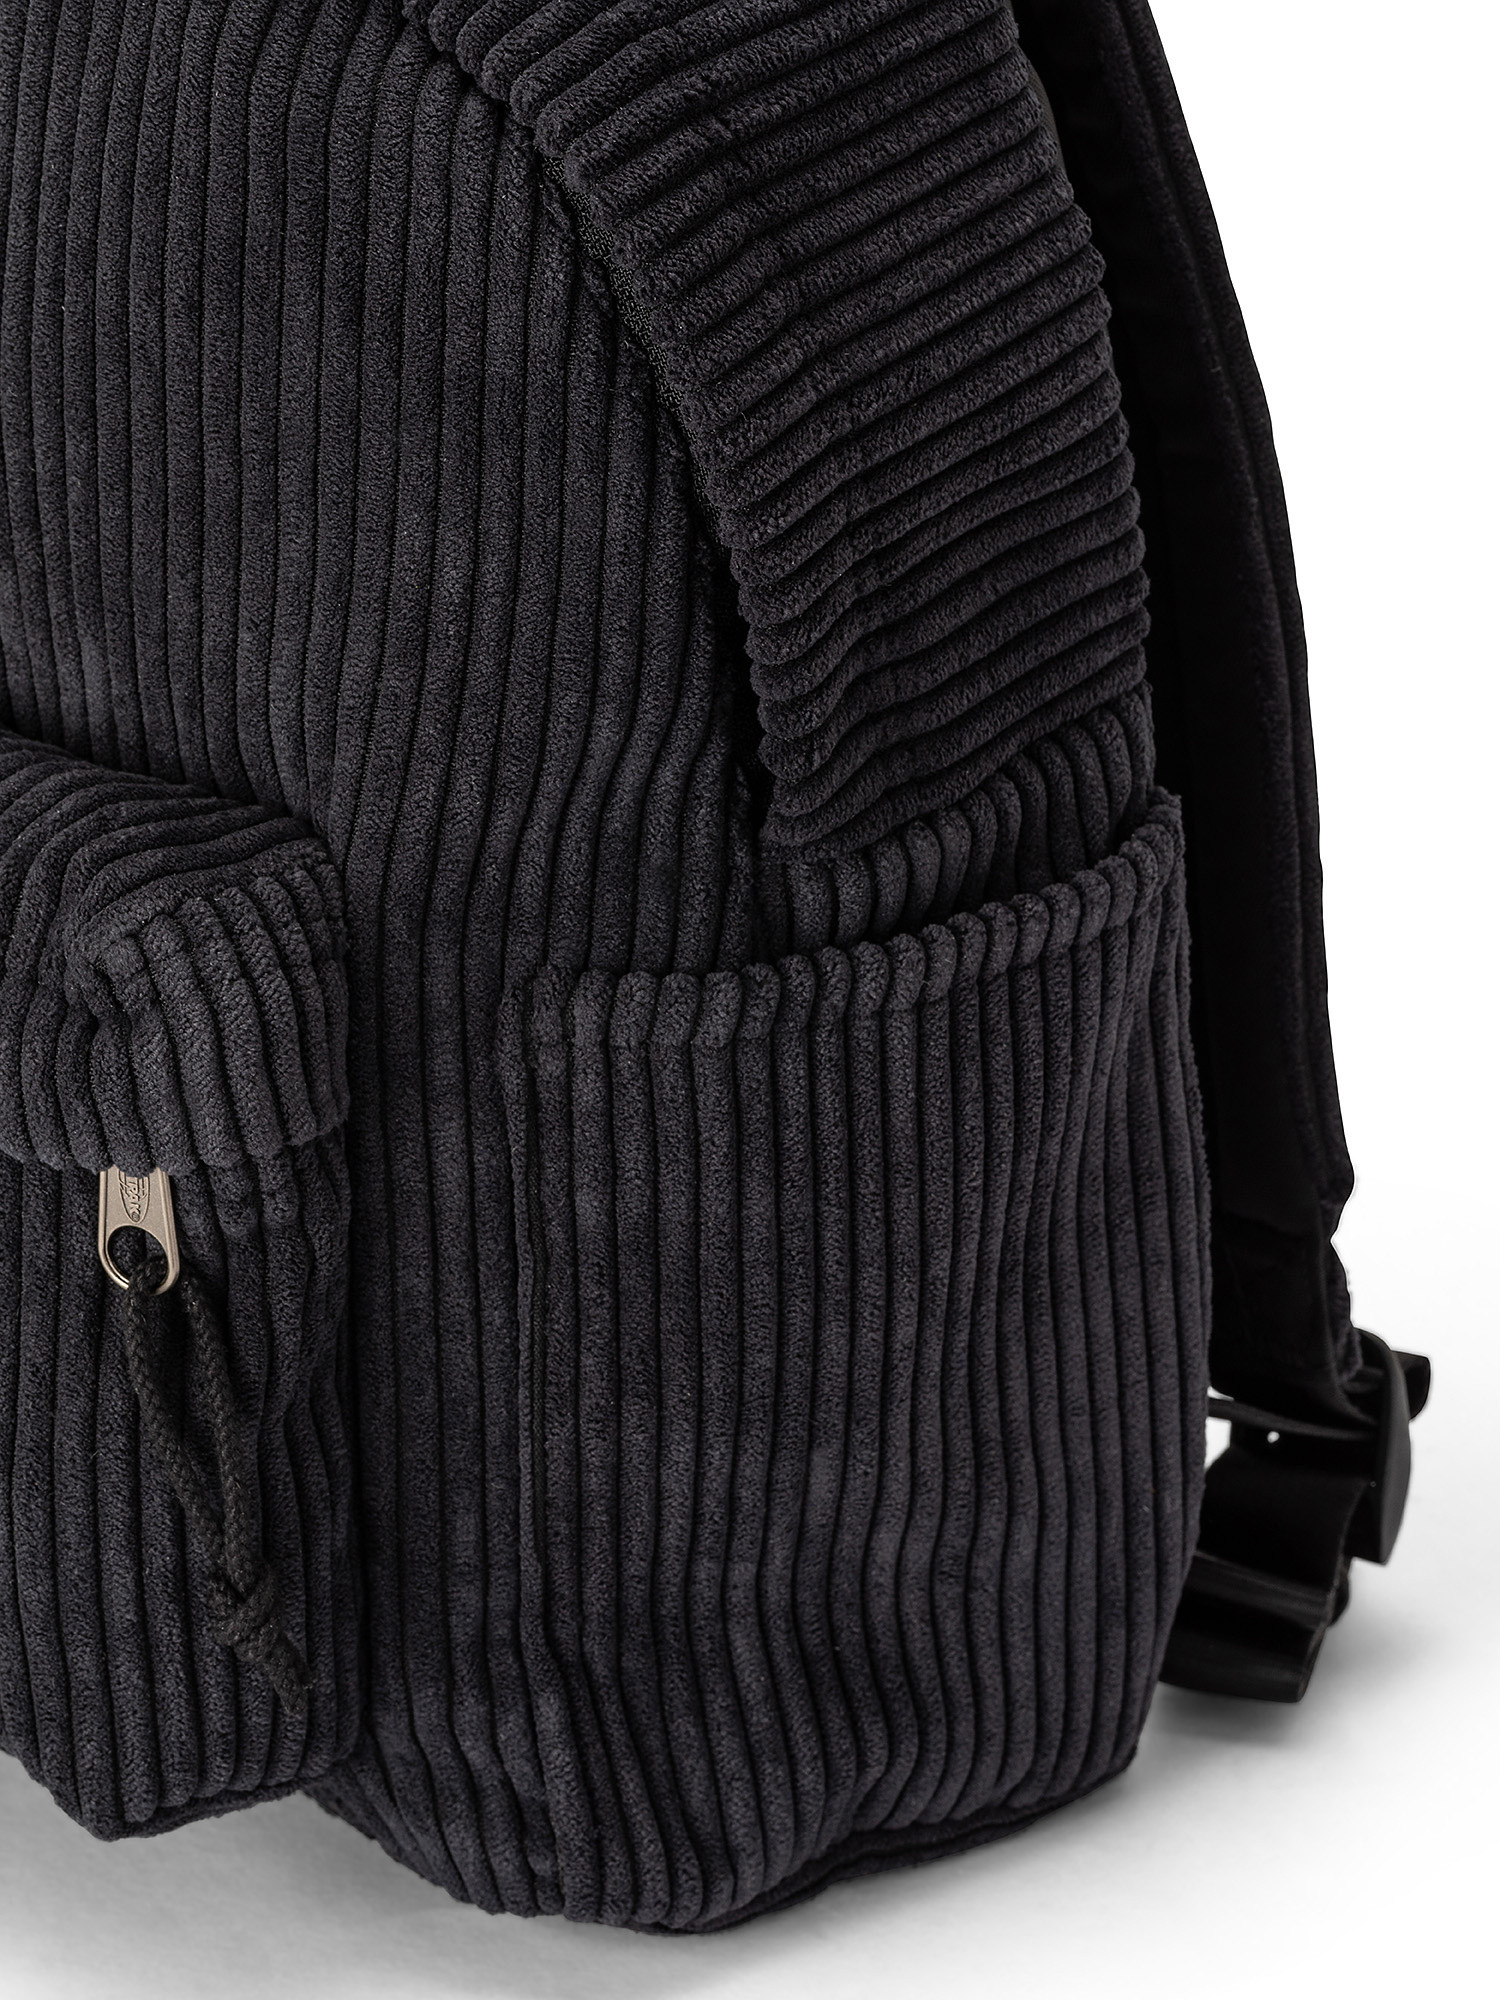 Mini backpack with tablet pocket, Black, large image number 2